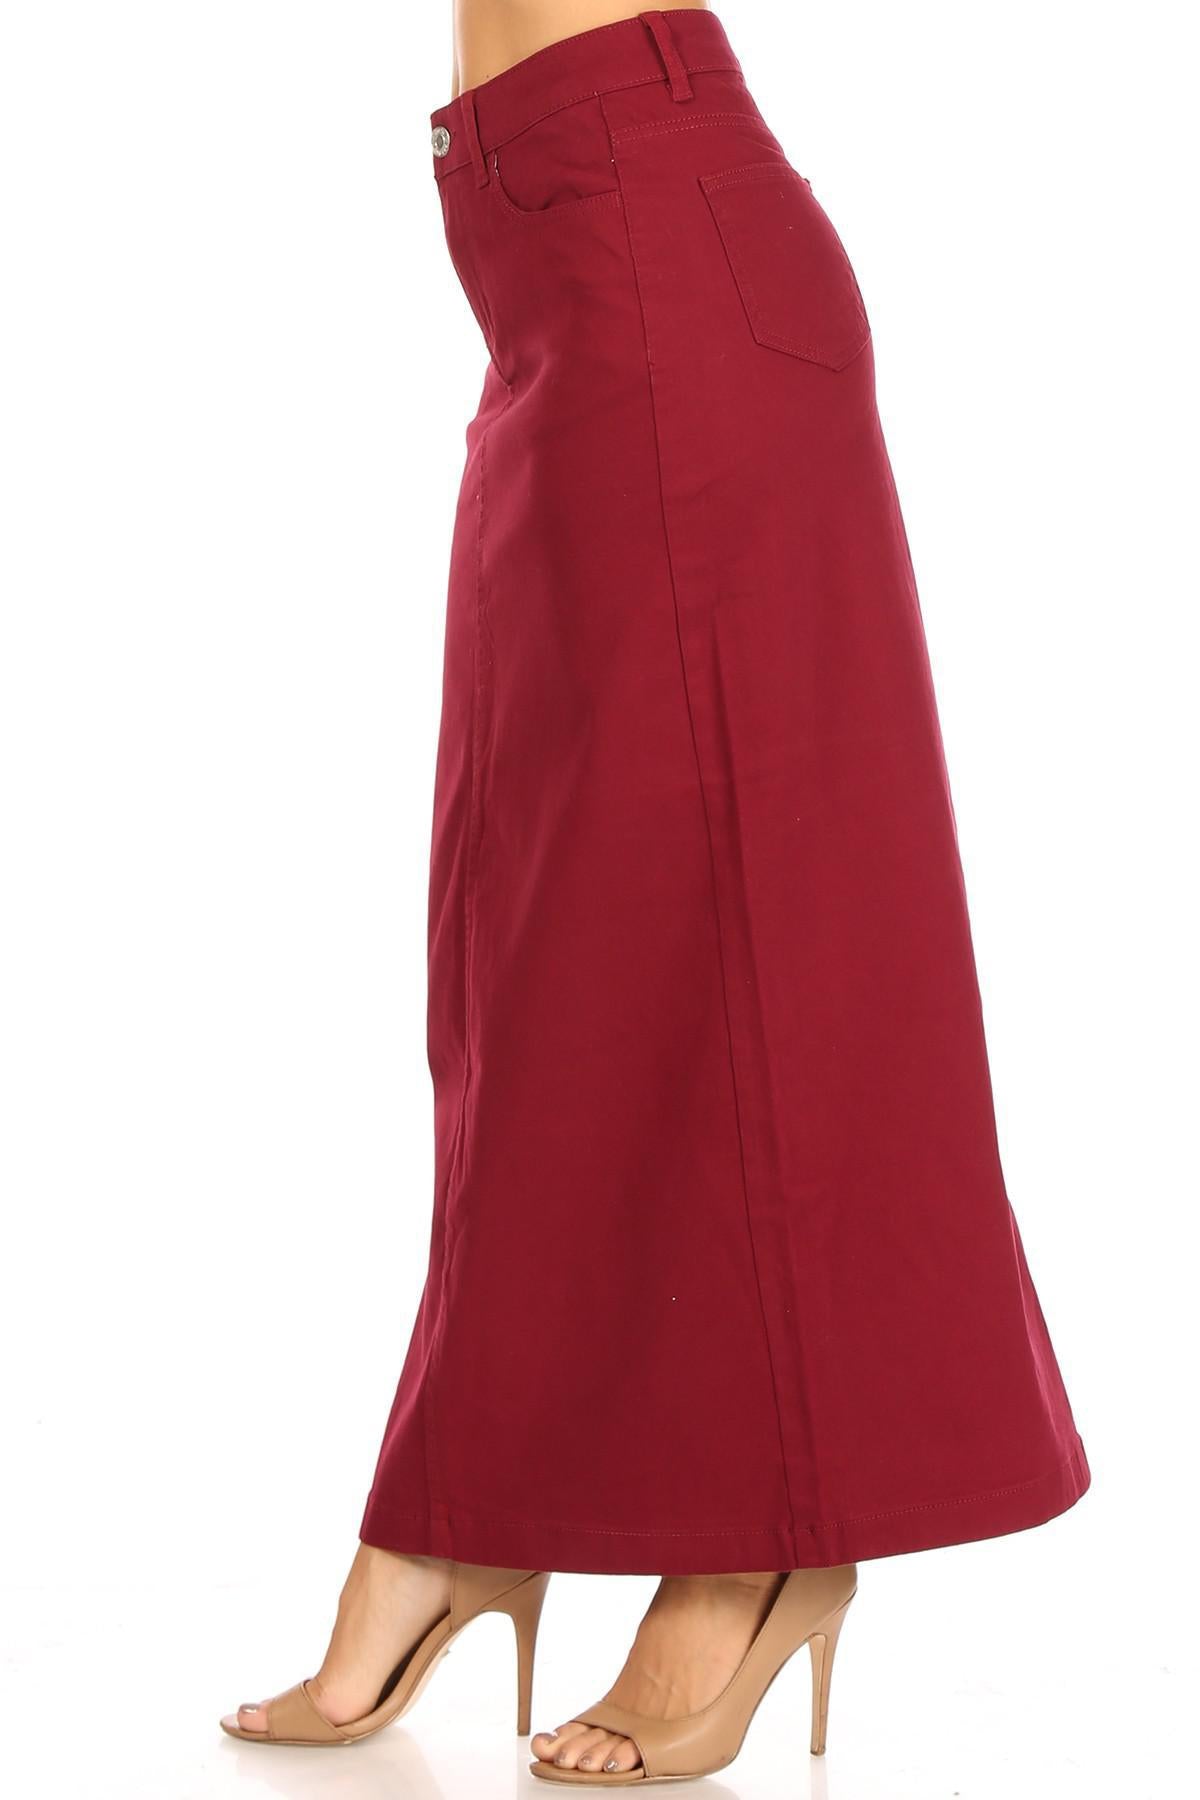 Ava Long Color Denim Skirt (Wine)